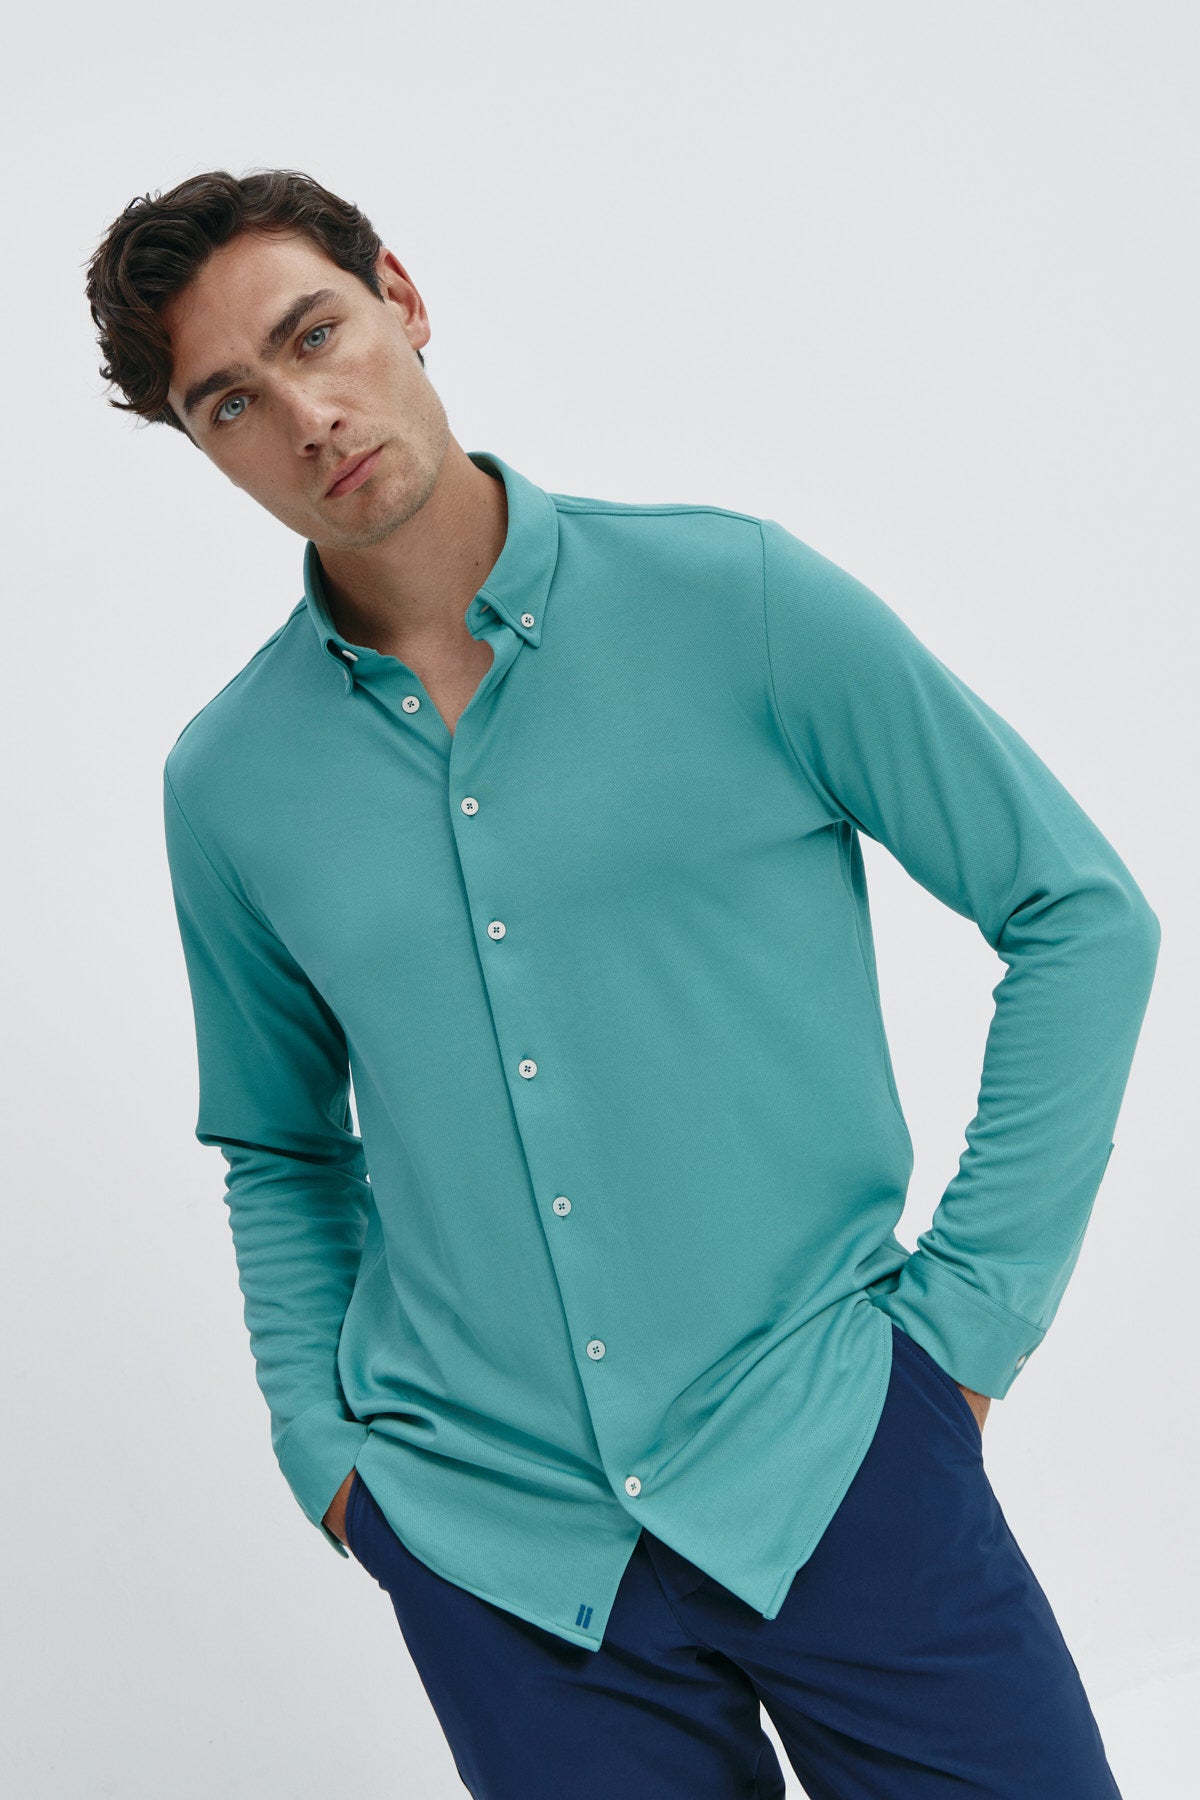 Camisa casual de hombre verde clorofila regular de Sepiia, estilo y versatilidad en una prenda duradera. Foto fleibilidad